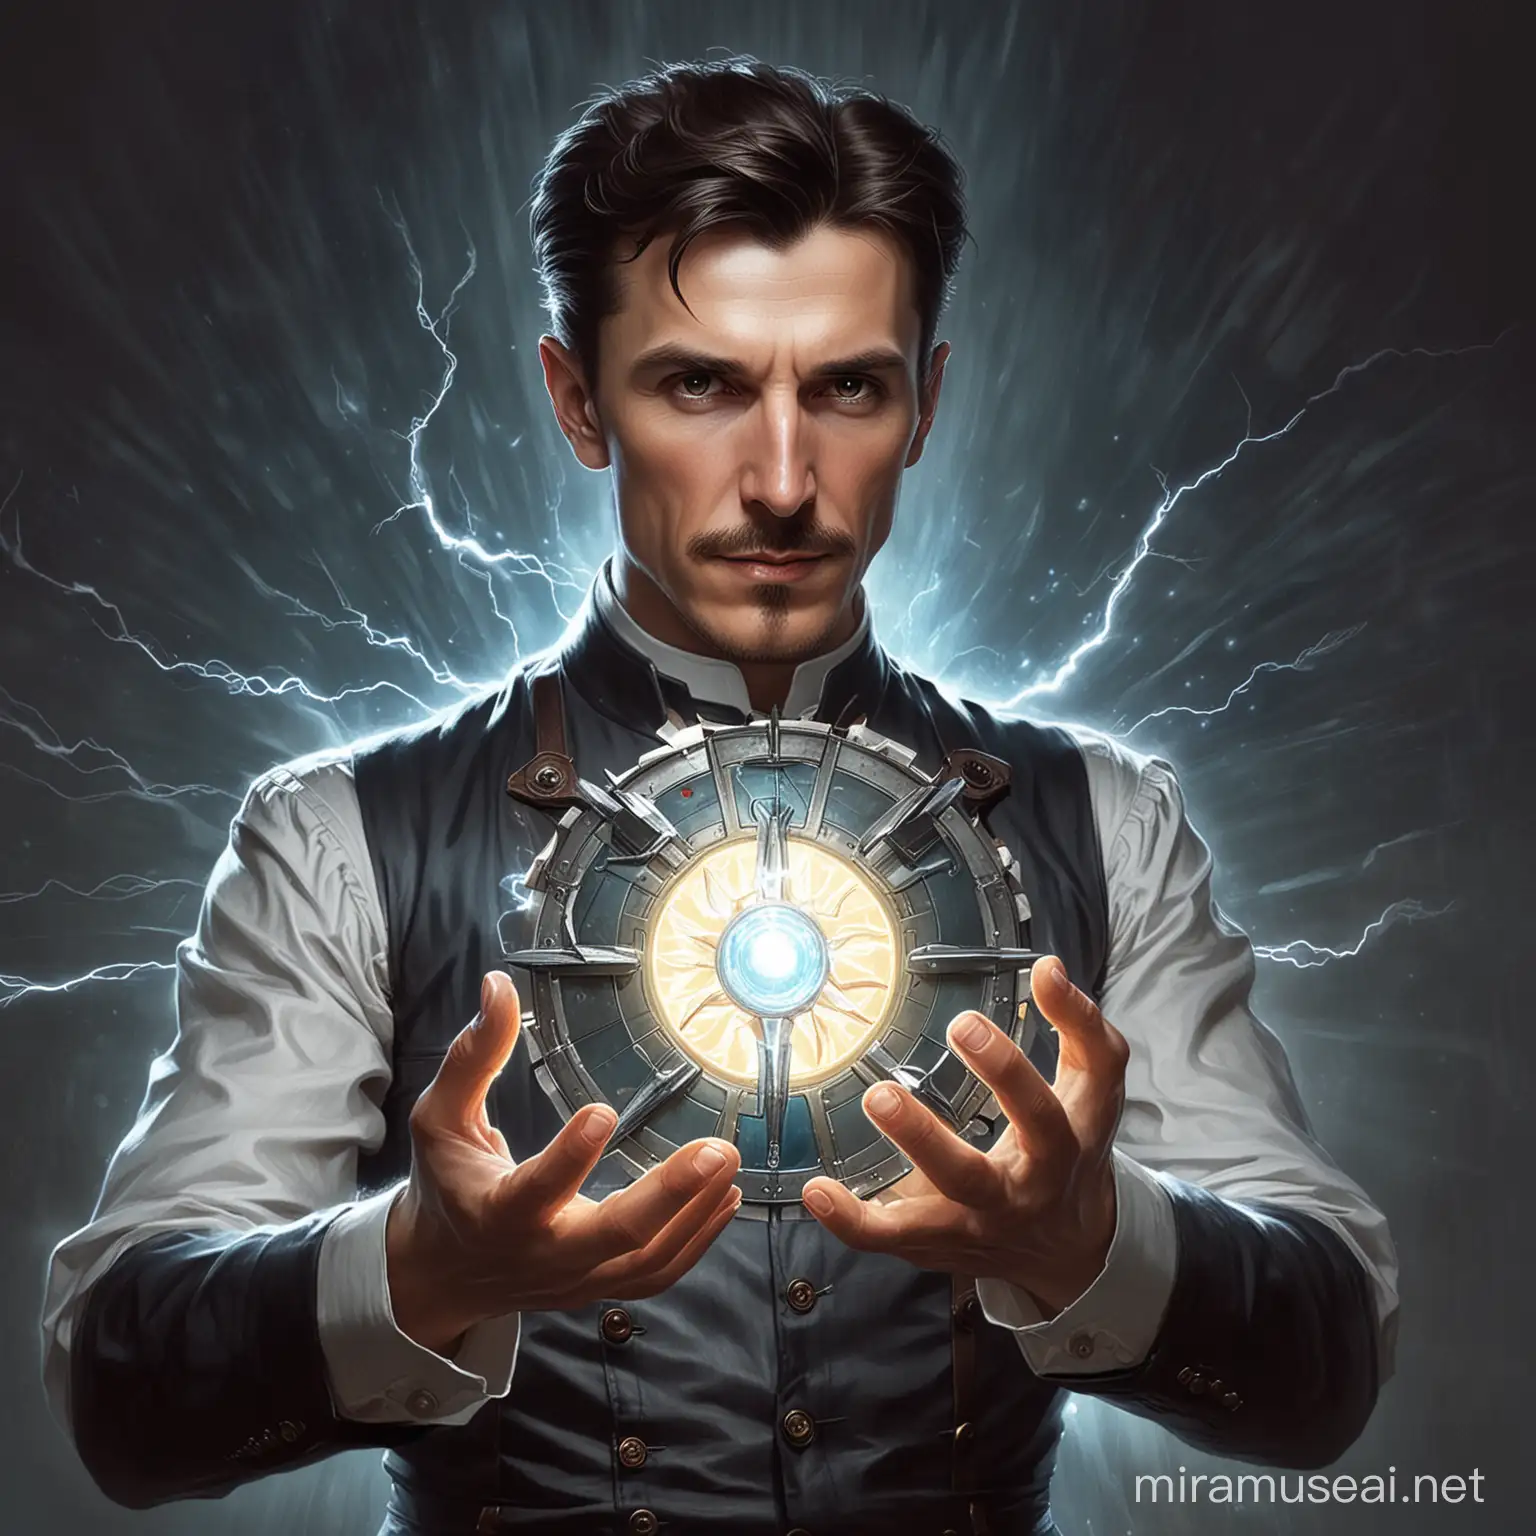 Nikola tesla holding a arc reactor with lightning as super sayan